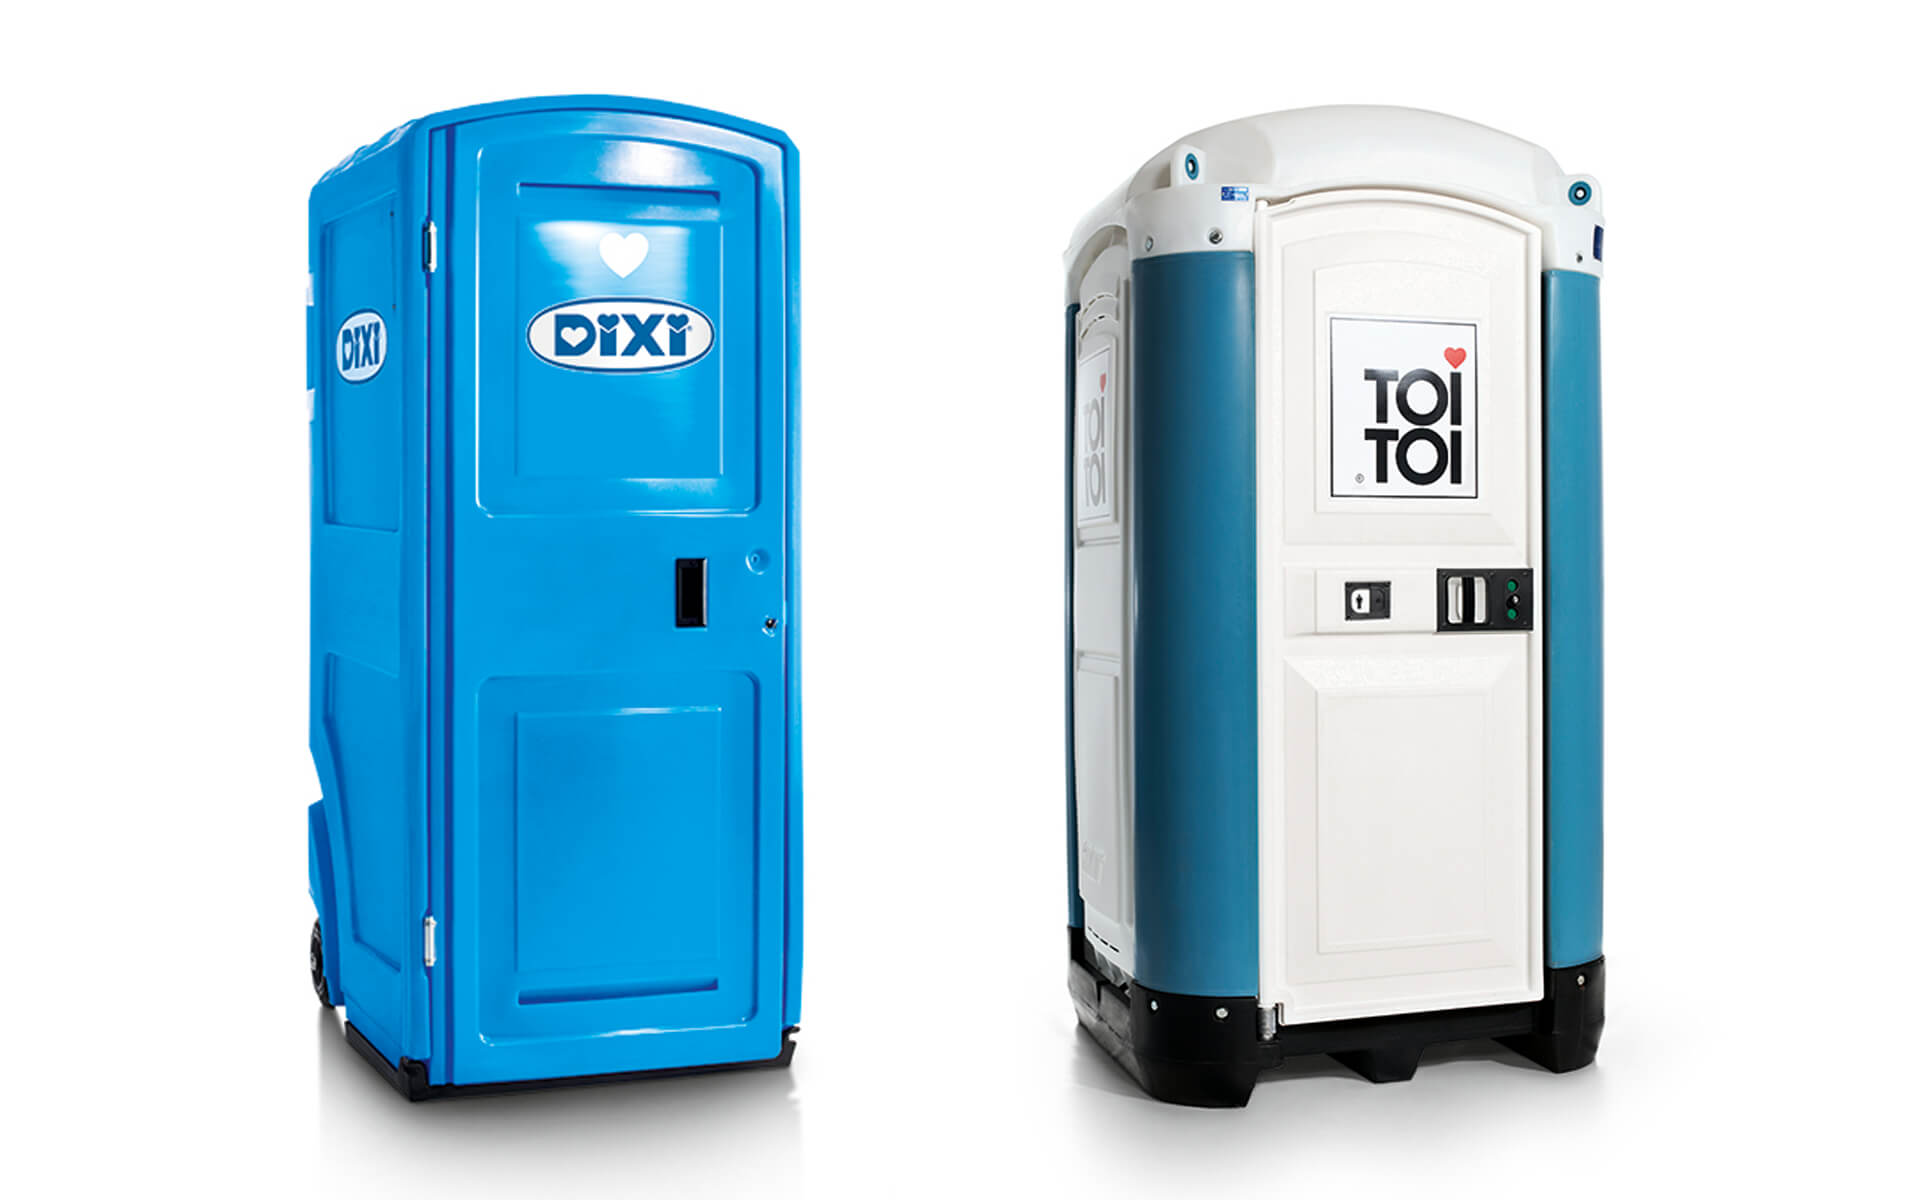 TOITOI-Dixi-Corporate_Design-Redesign-WC-Units